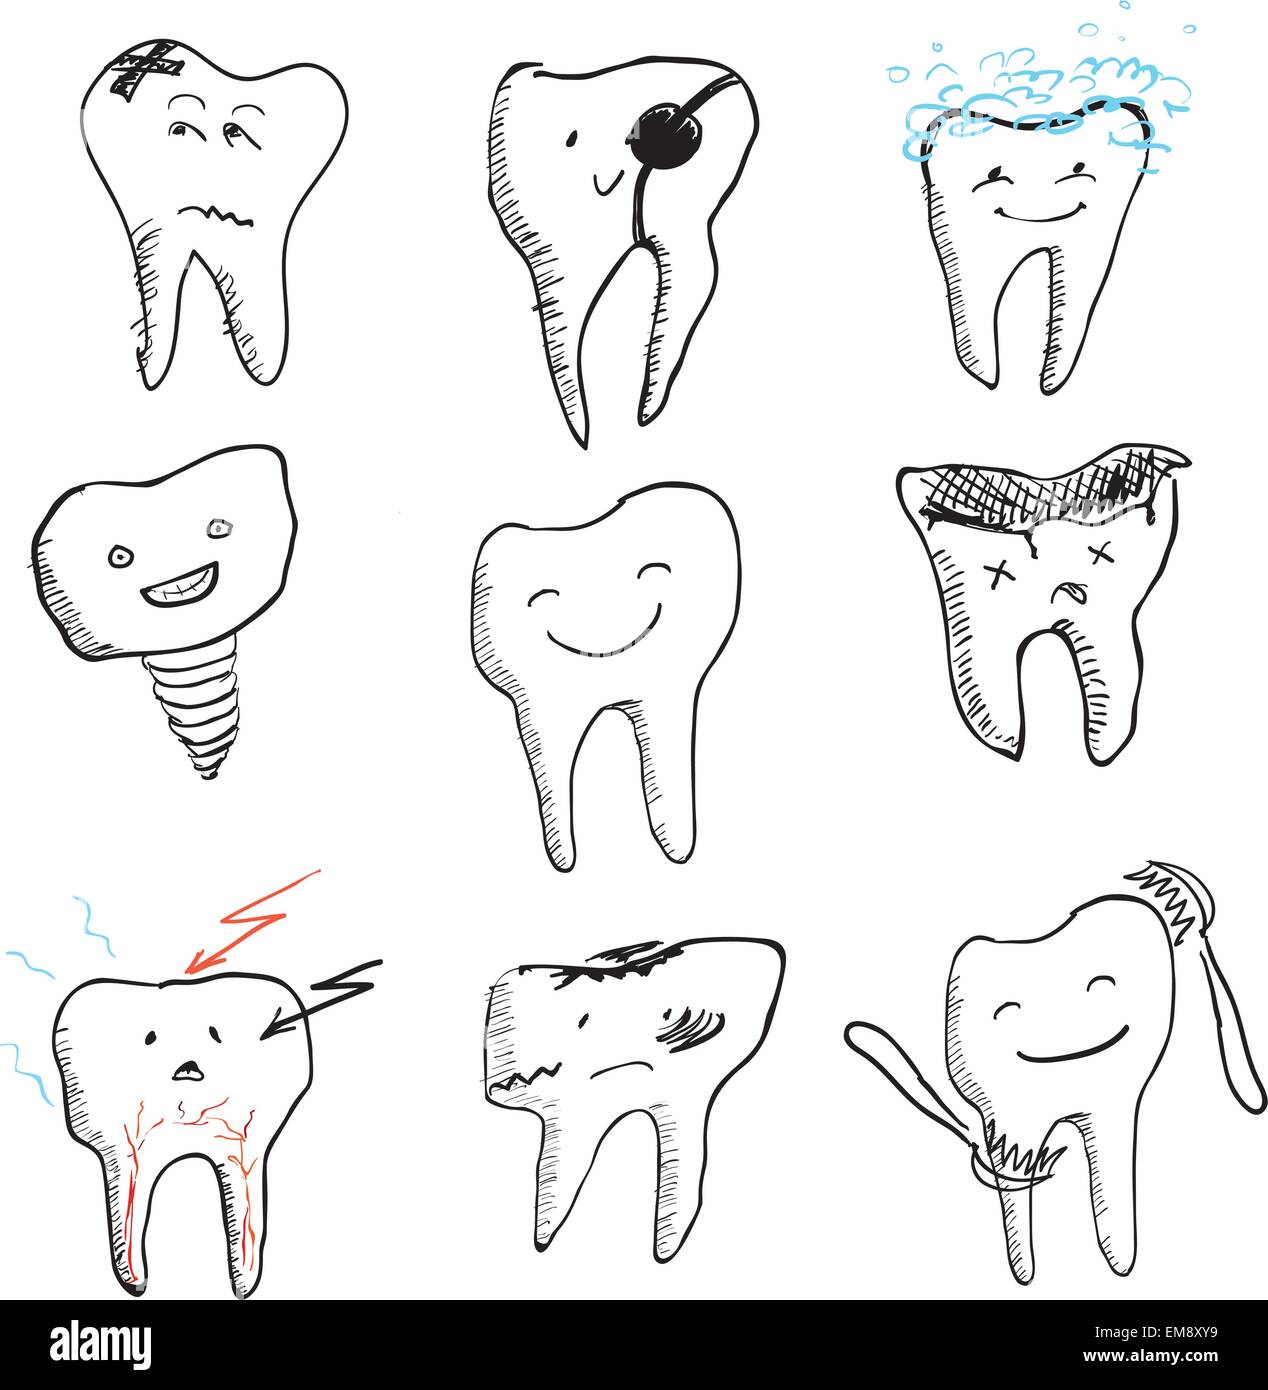 Drôle dessiné à la main les dents, vector icons collection Illustration de Vecteur